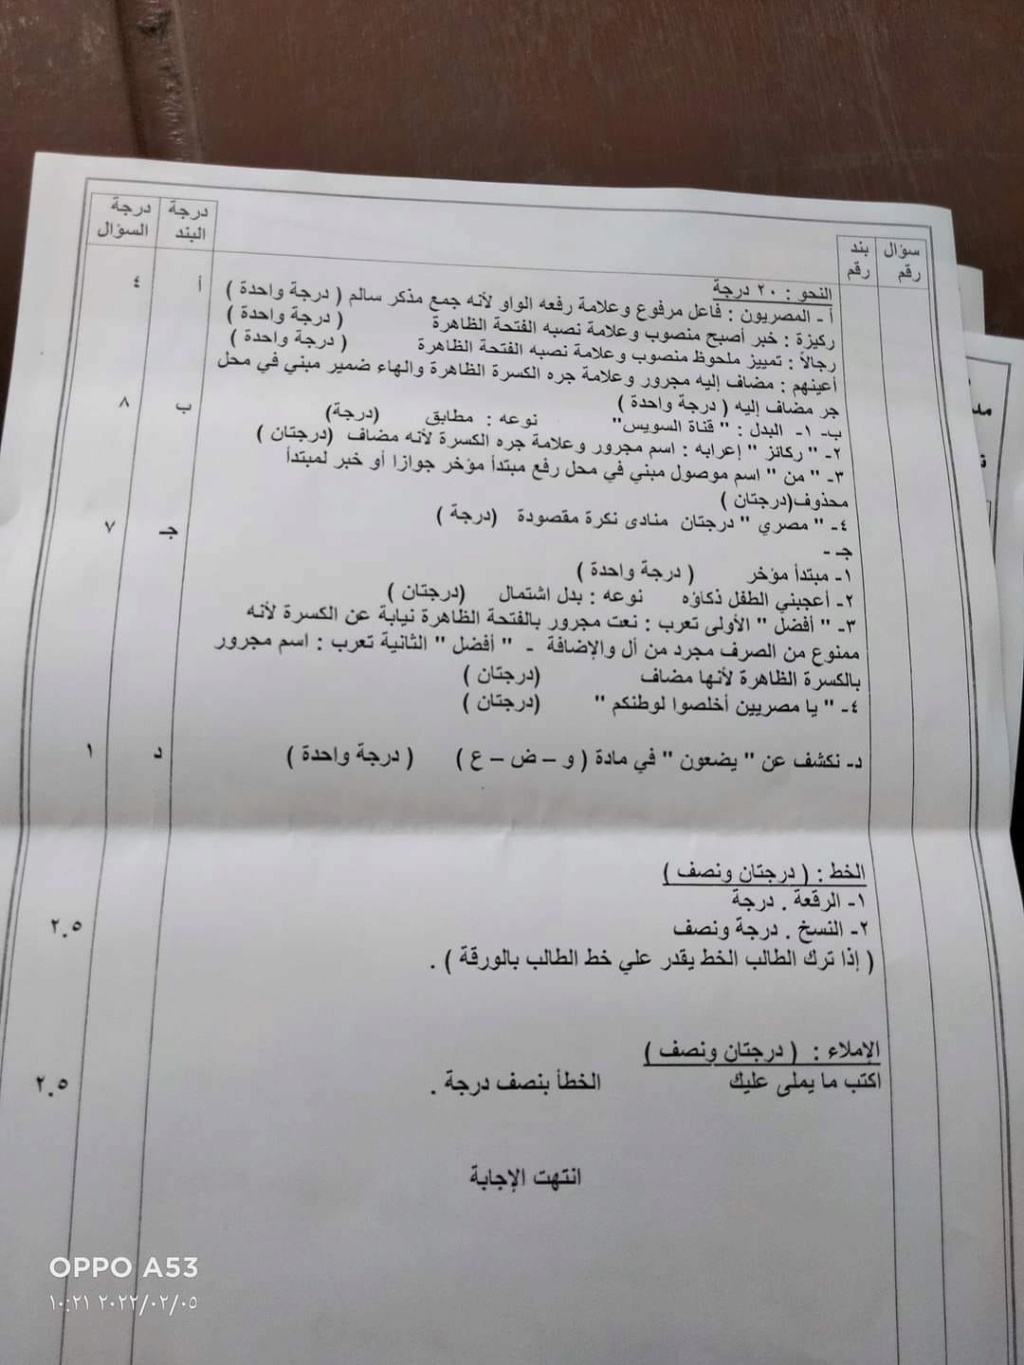  امتحان اللغة العربية للصف الثالث الاعدادي ترم اول 2022 محافظة الغربية 3236